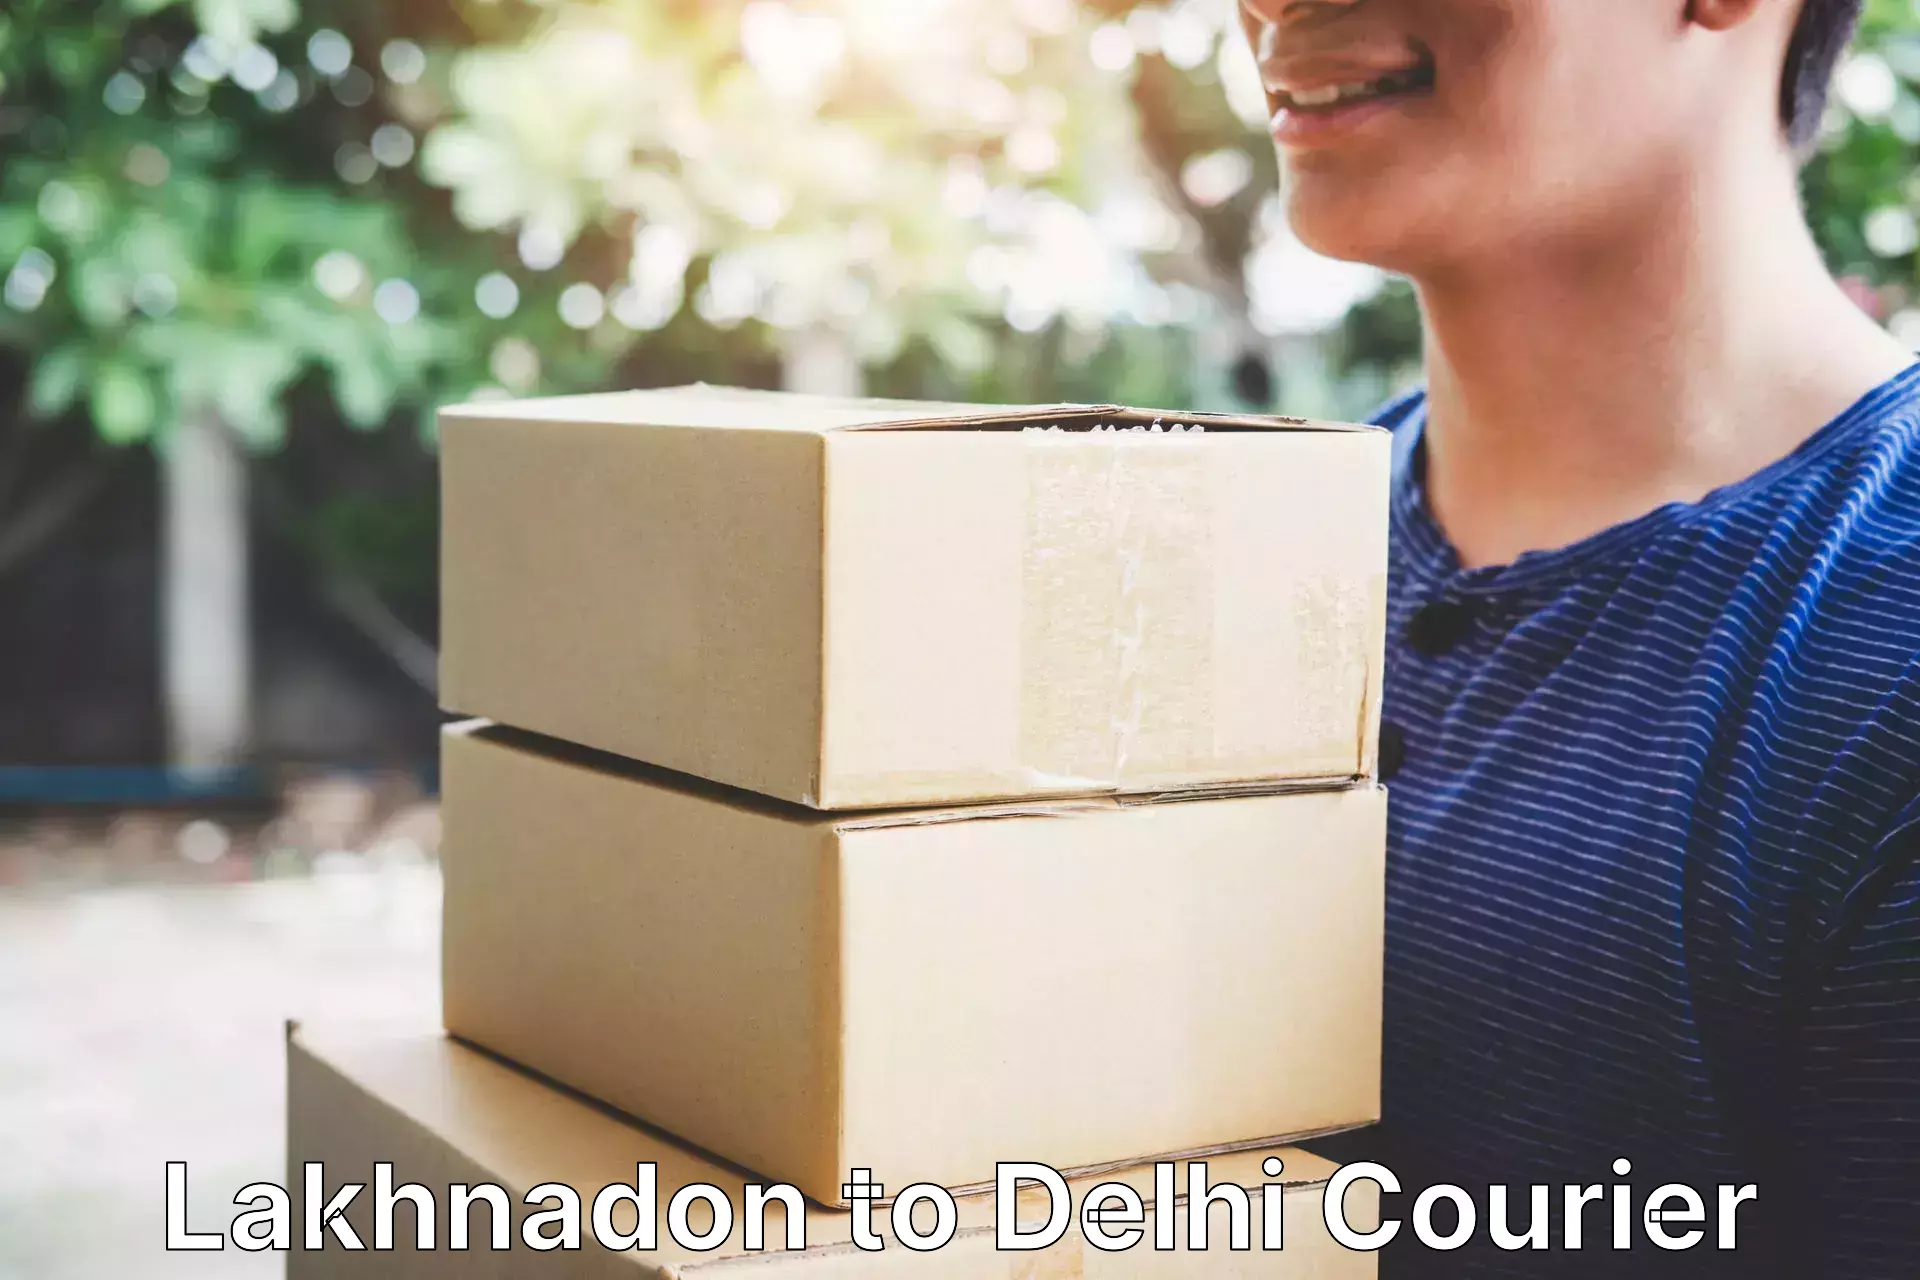 Cargo courier service Lakhnadon to Delhi